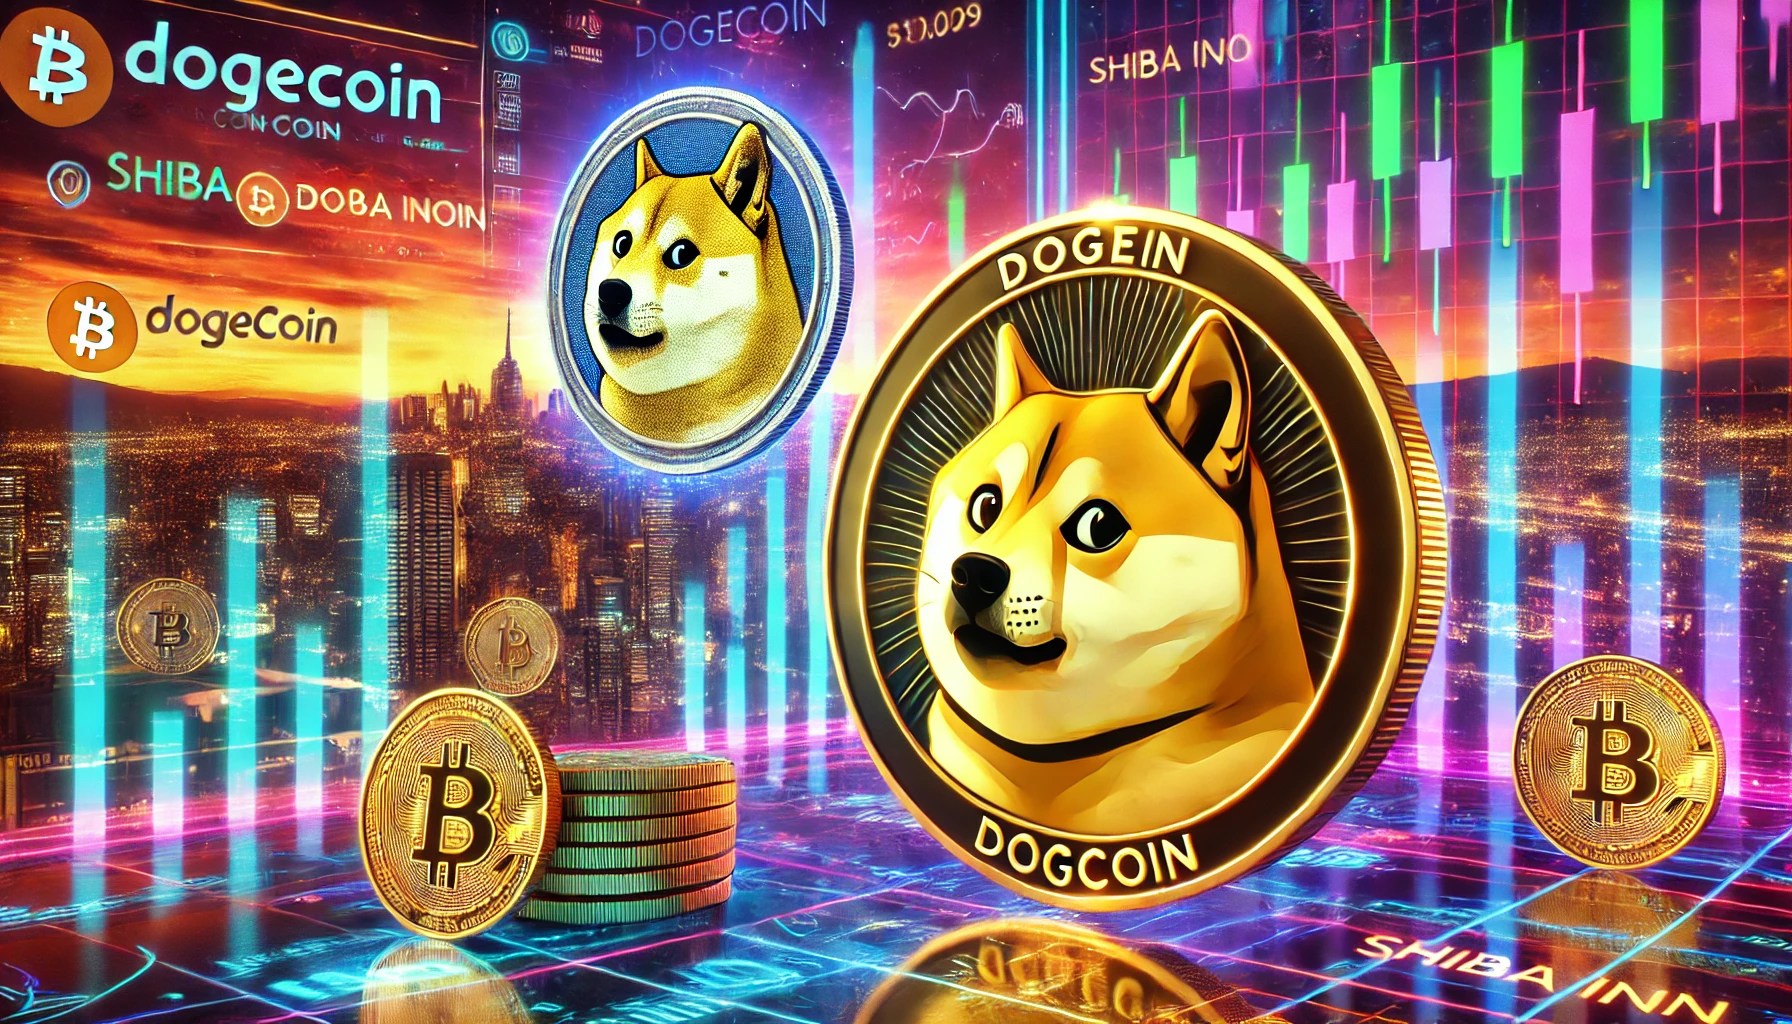 오늘 Shiba Inu와 Dogecoin이 크게 매도된 이유는 무엇입니까?